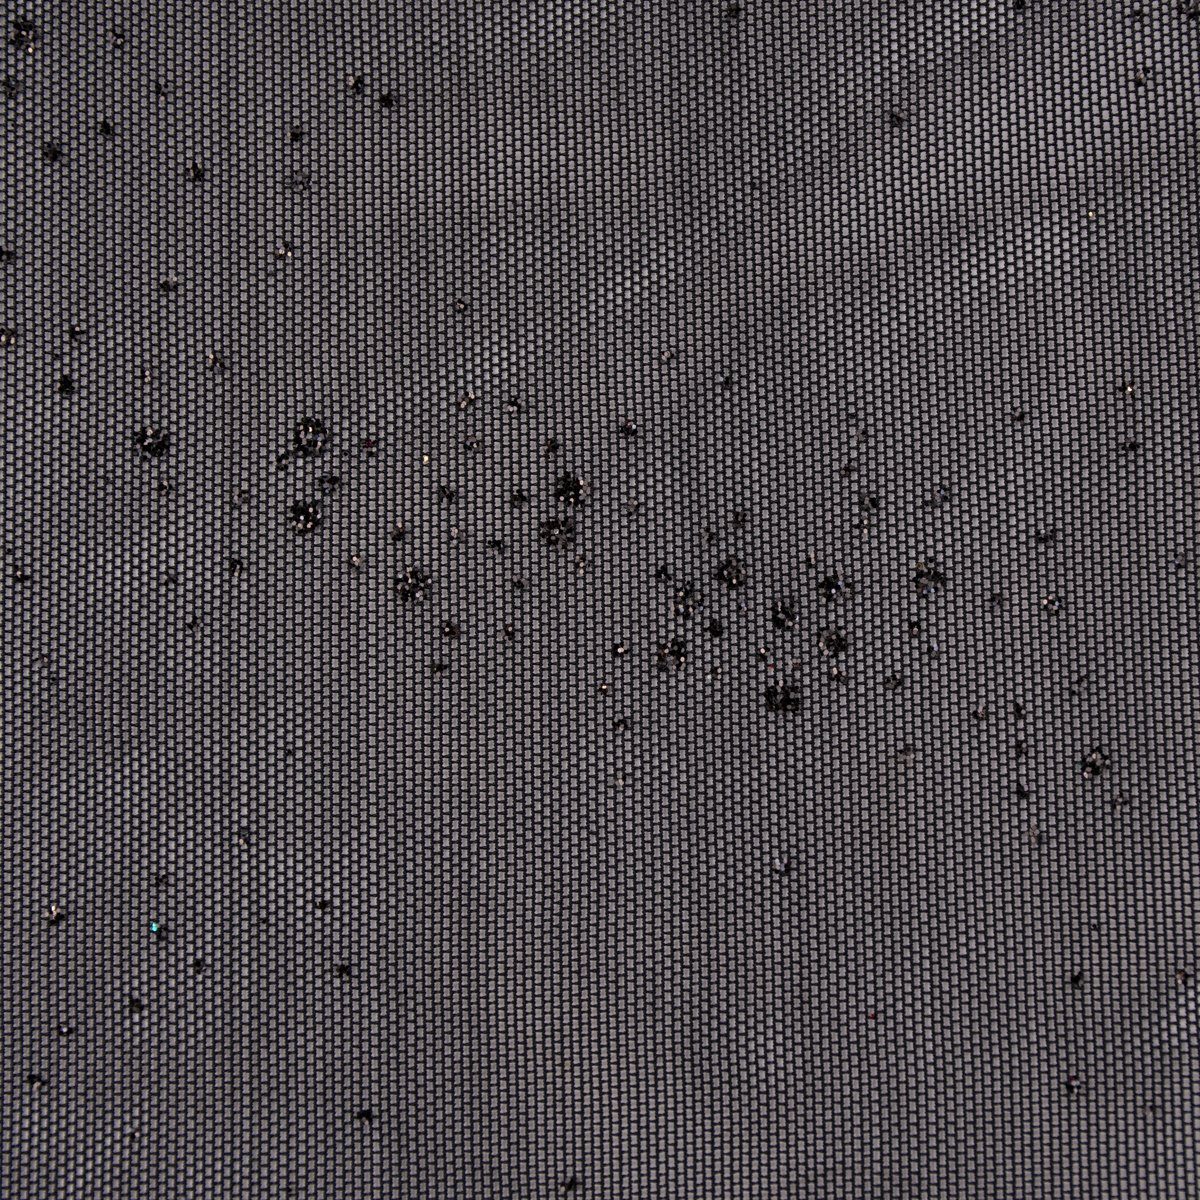 SCHÖNER LEBEN. Stoff Stretch Tüllstoff Glitzer weich einfarbig schwarz 1,5m Breite, mit Metallic-Effekt